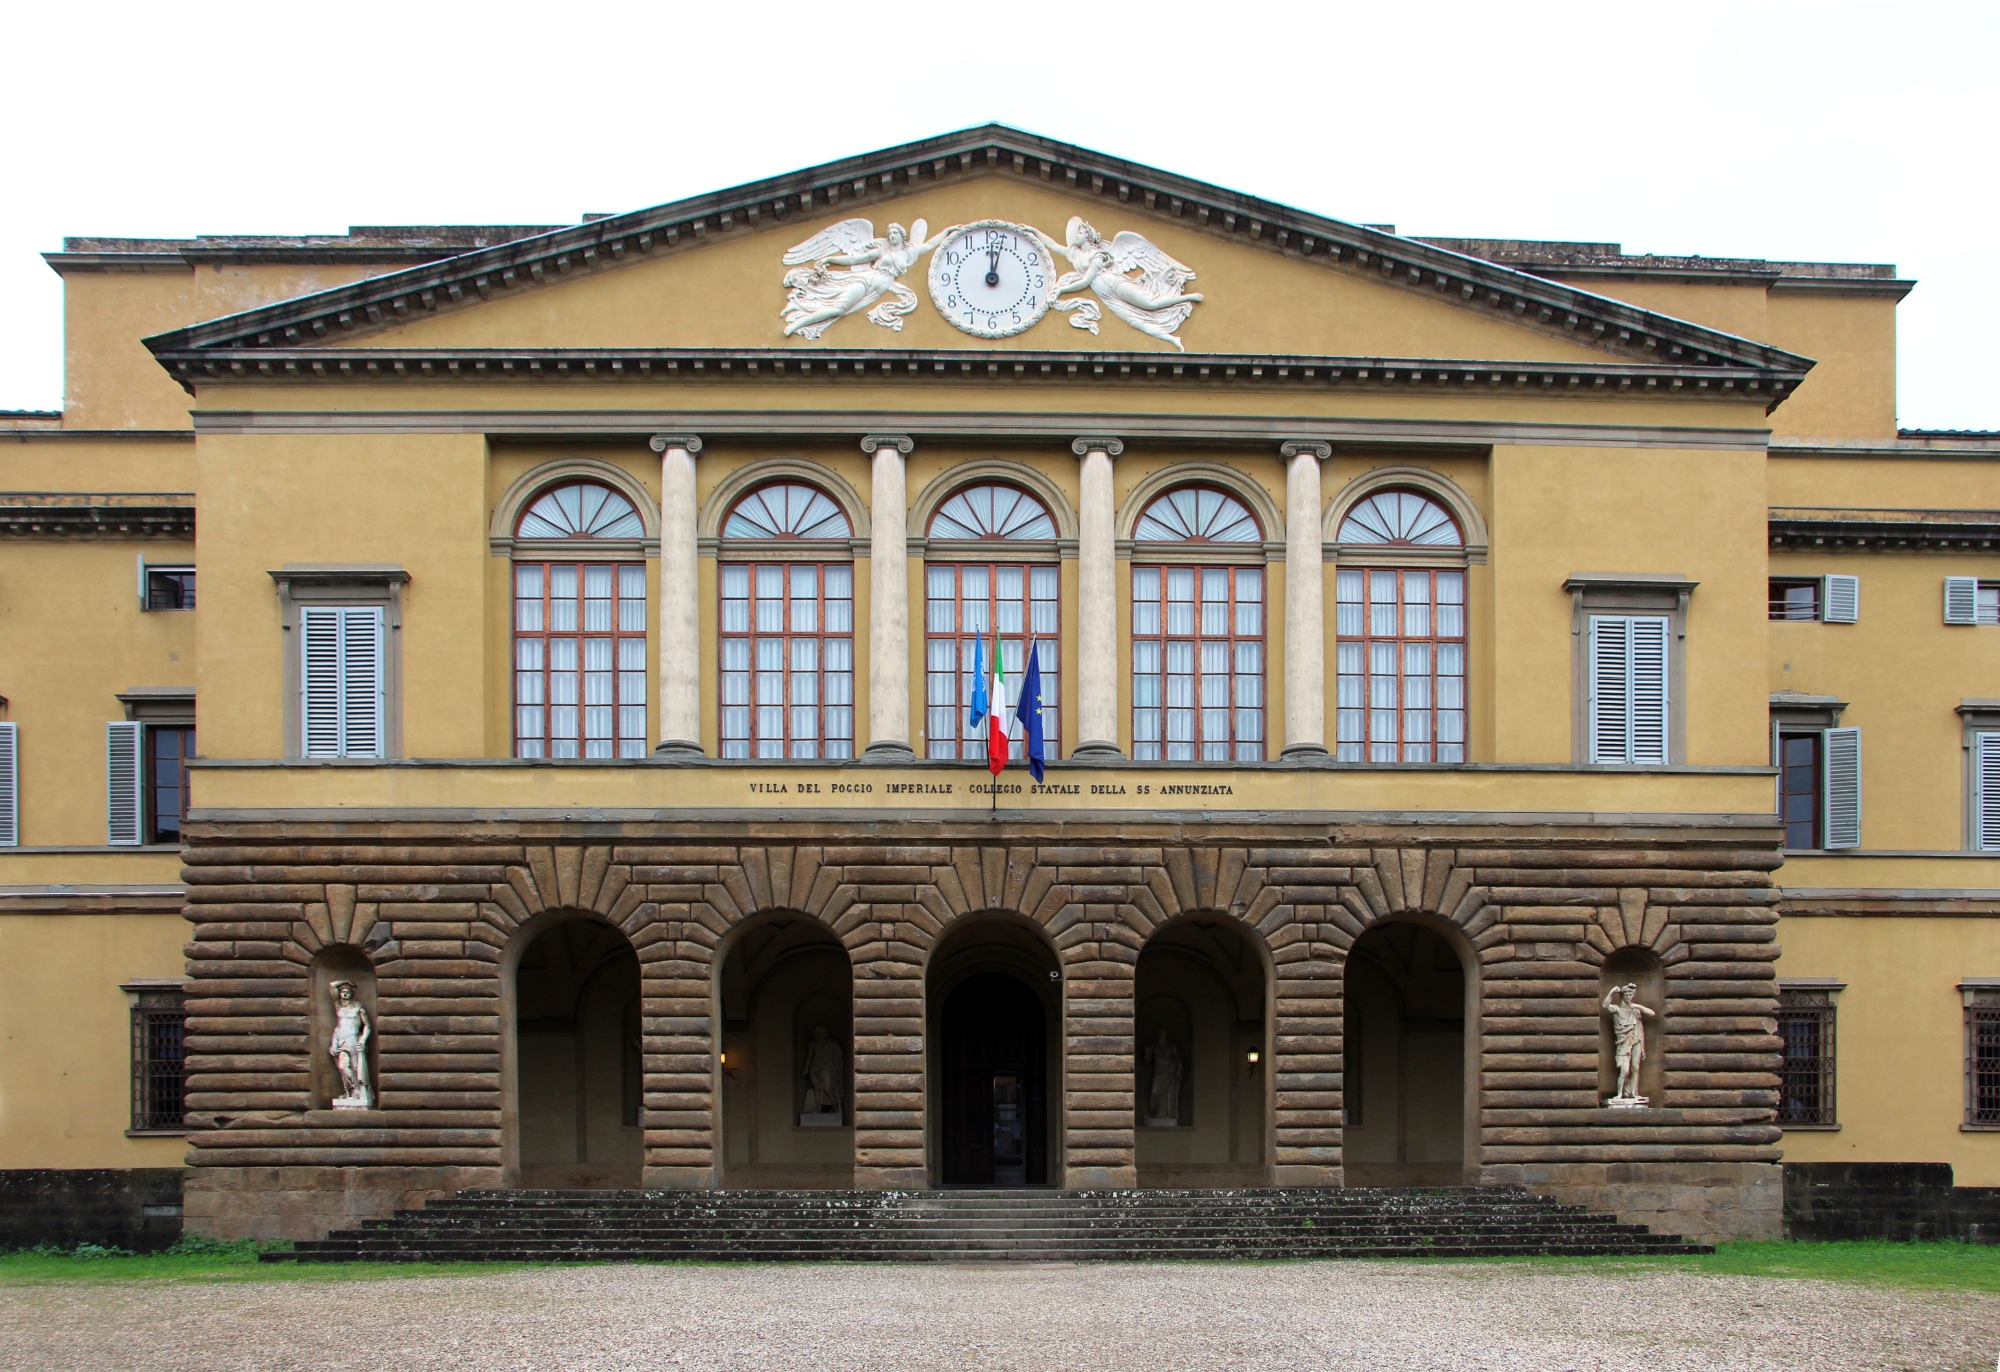 Medici Villa of Poggio Imperiale